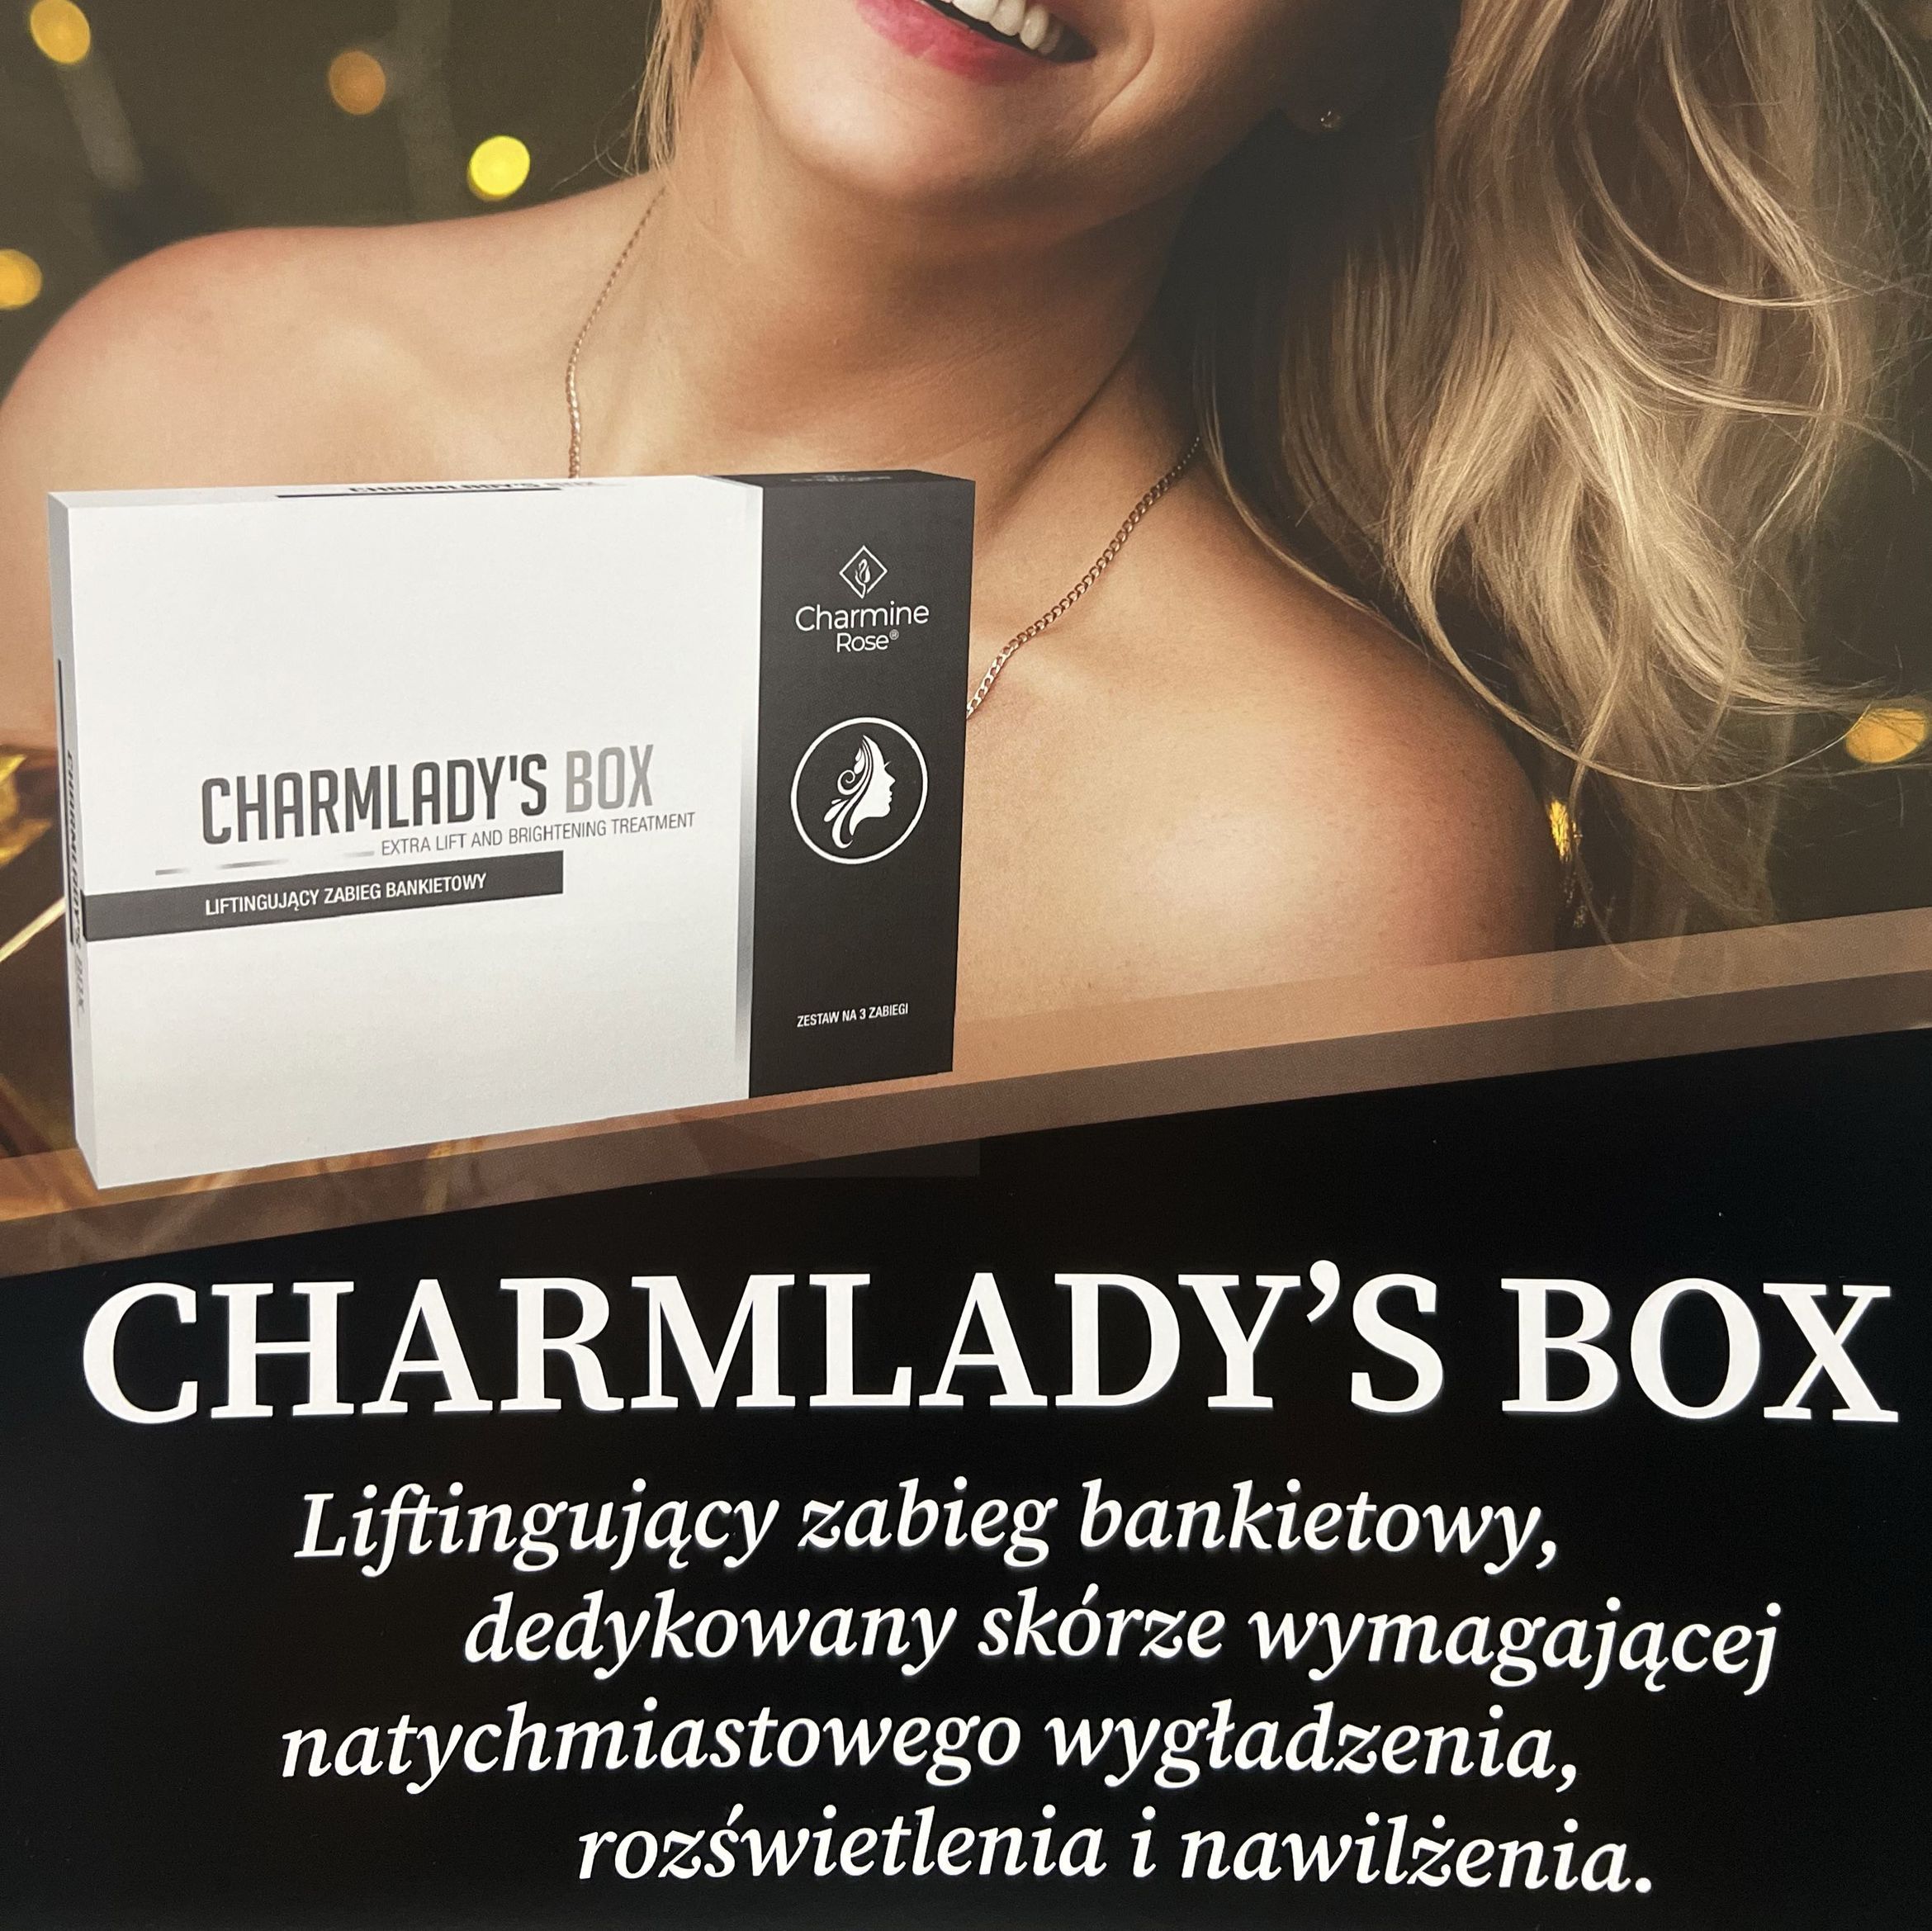 Portfolio usługi Charmladys Box- zabieg bankietowy